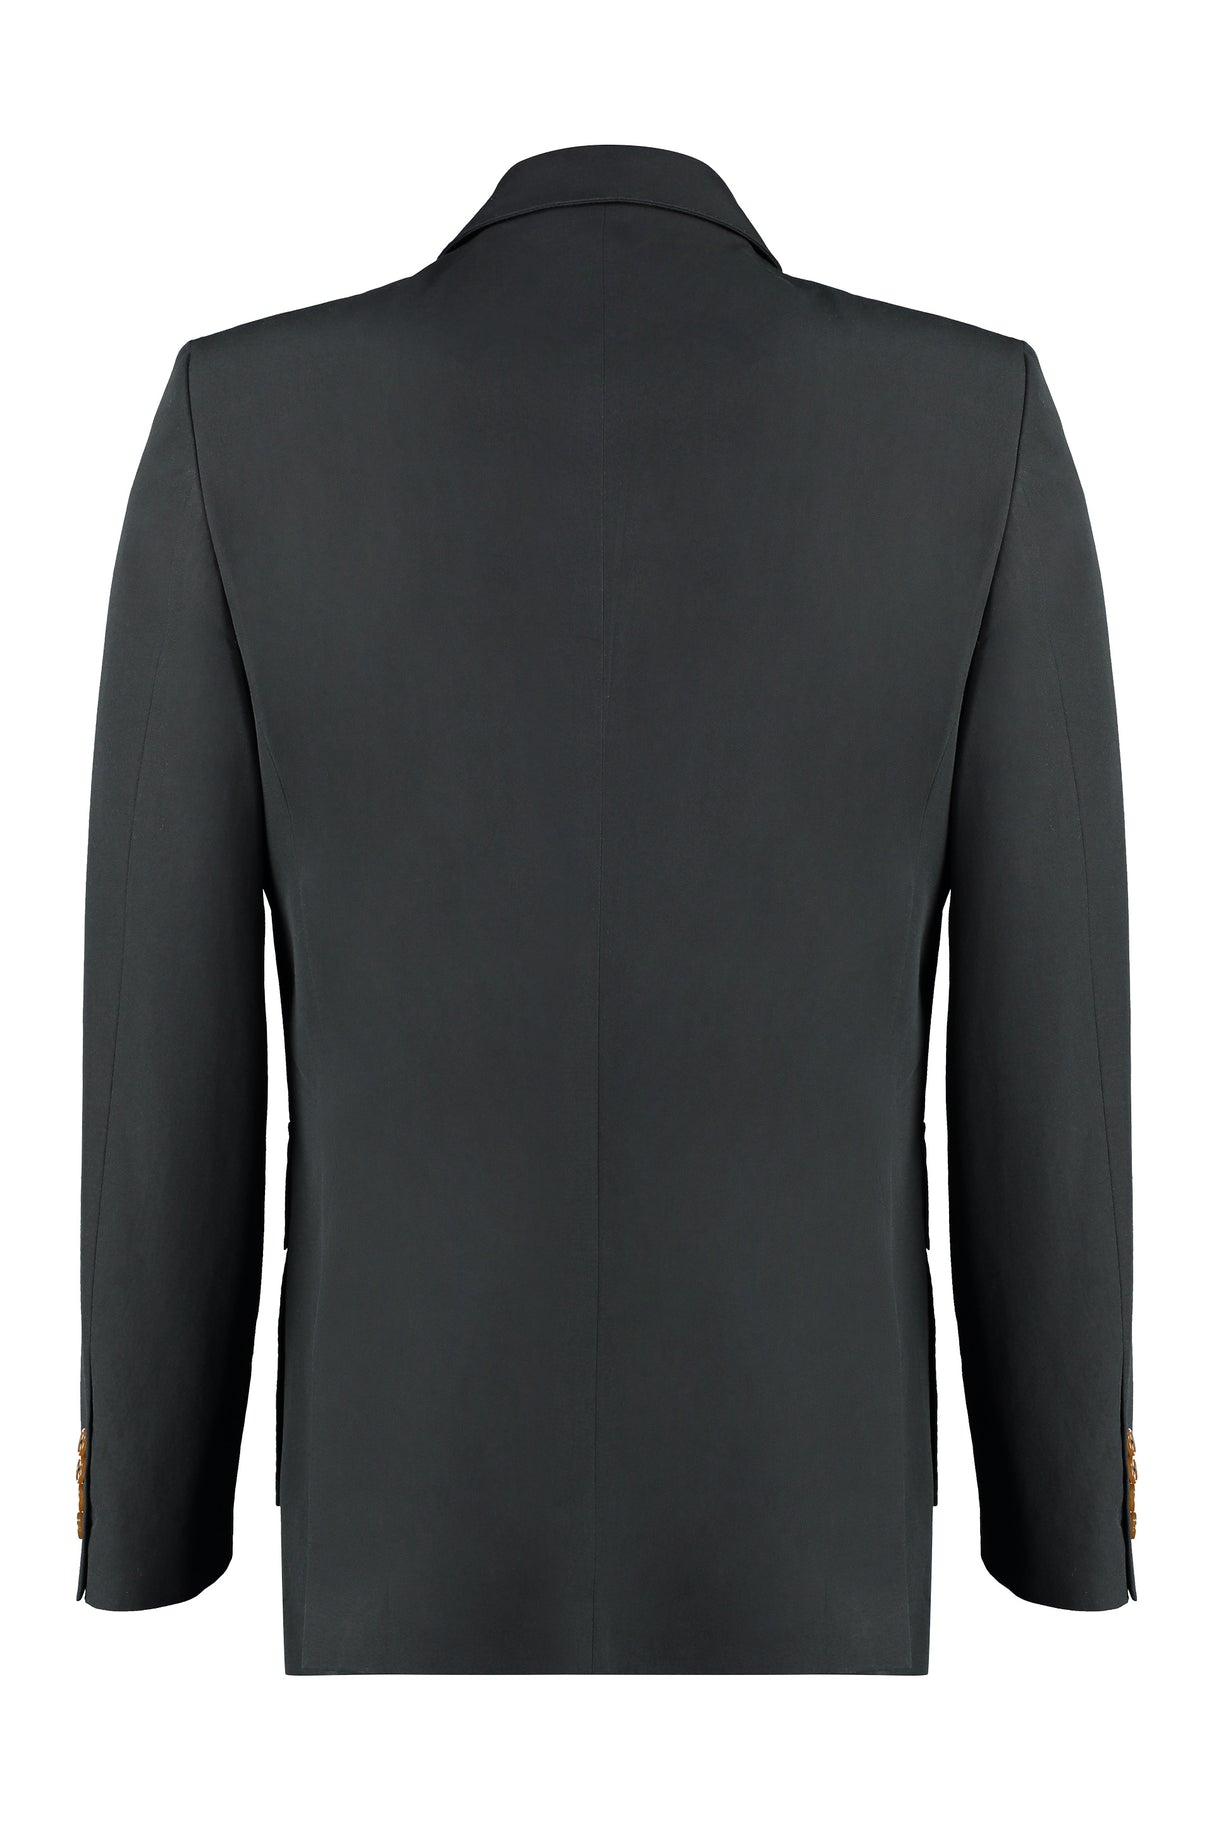 Áo khoác cotton nam phong cách với nút phía trước màu đen